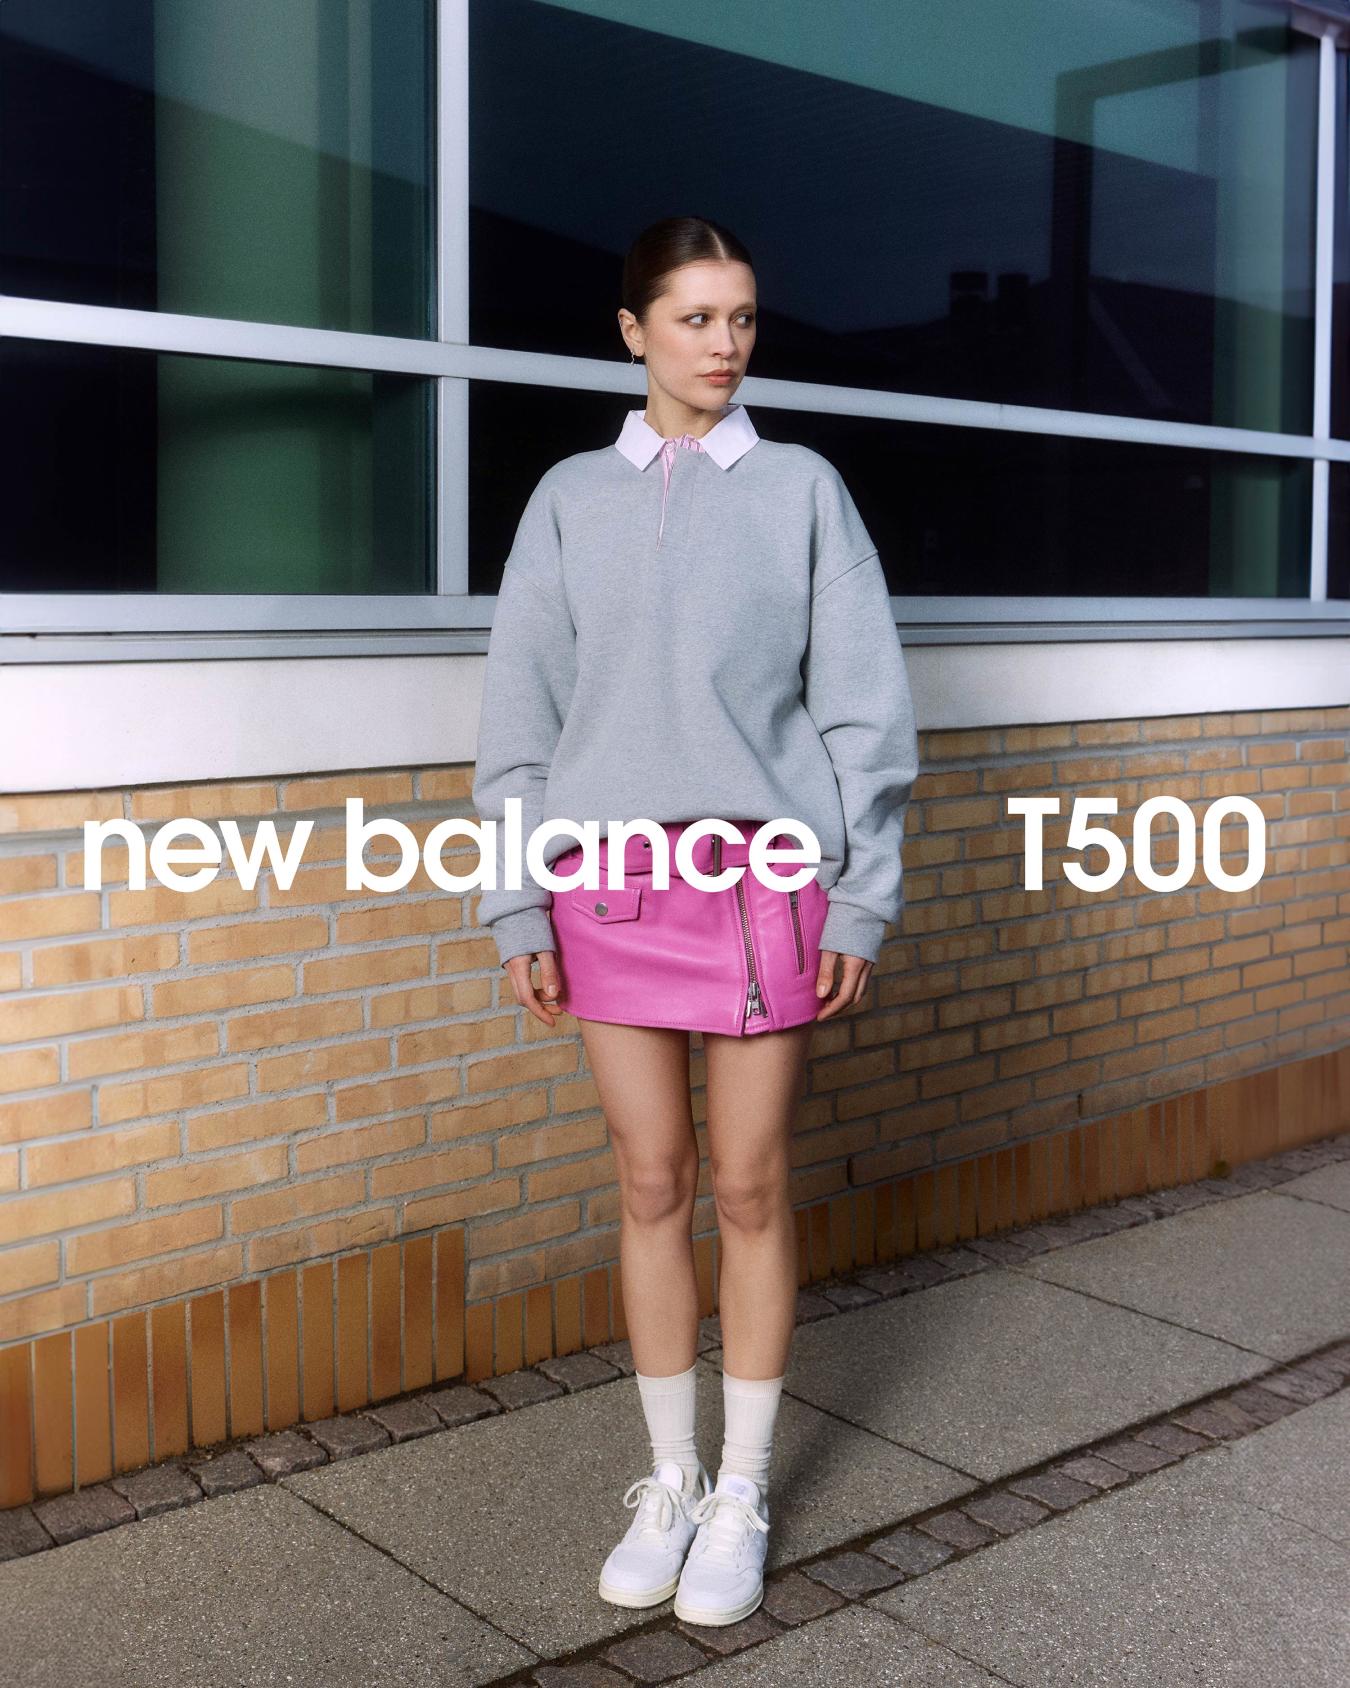 The New Balance T500: Versatile, Everyday Luxury